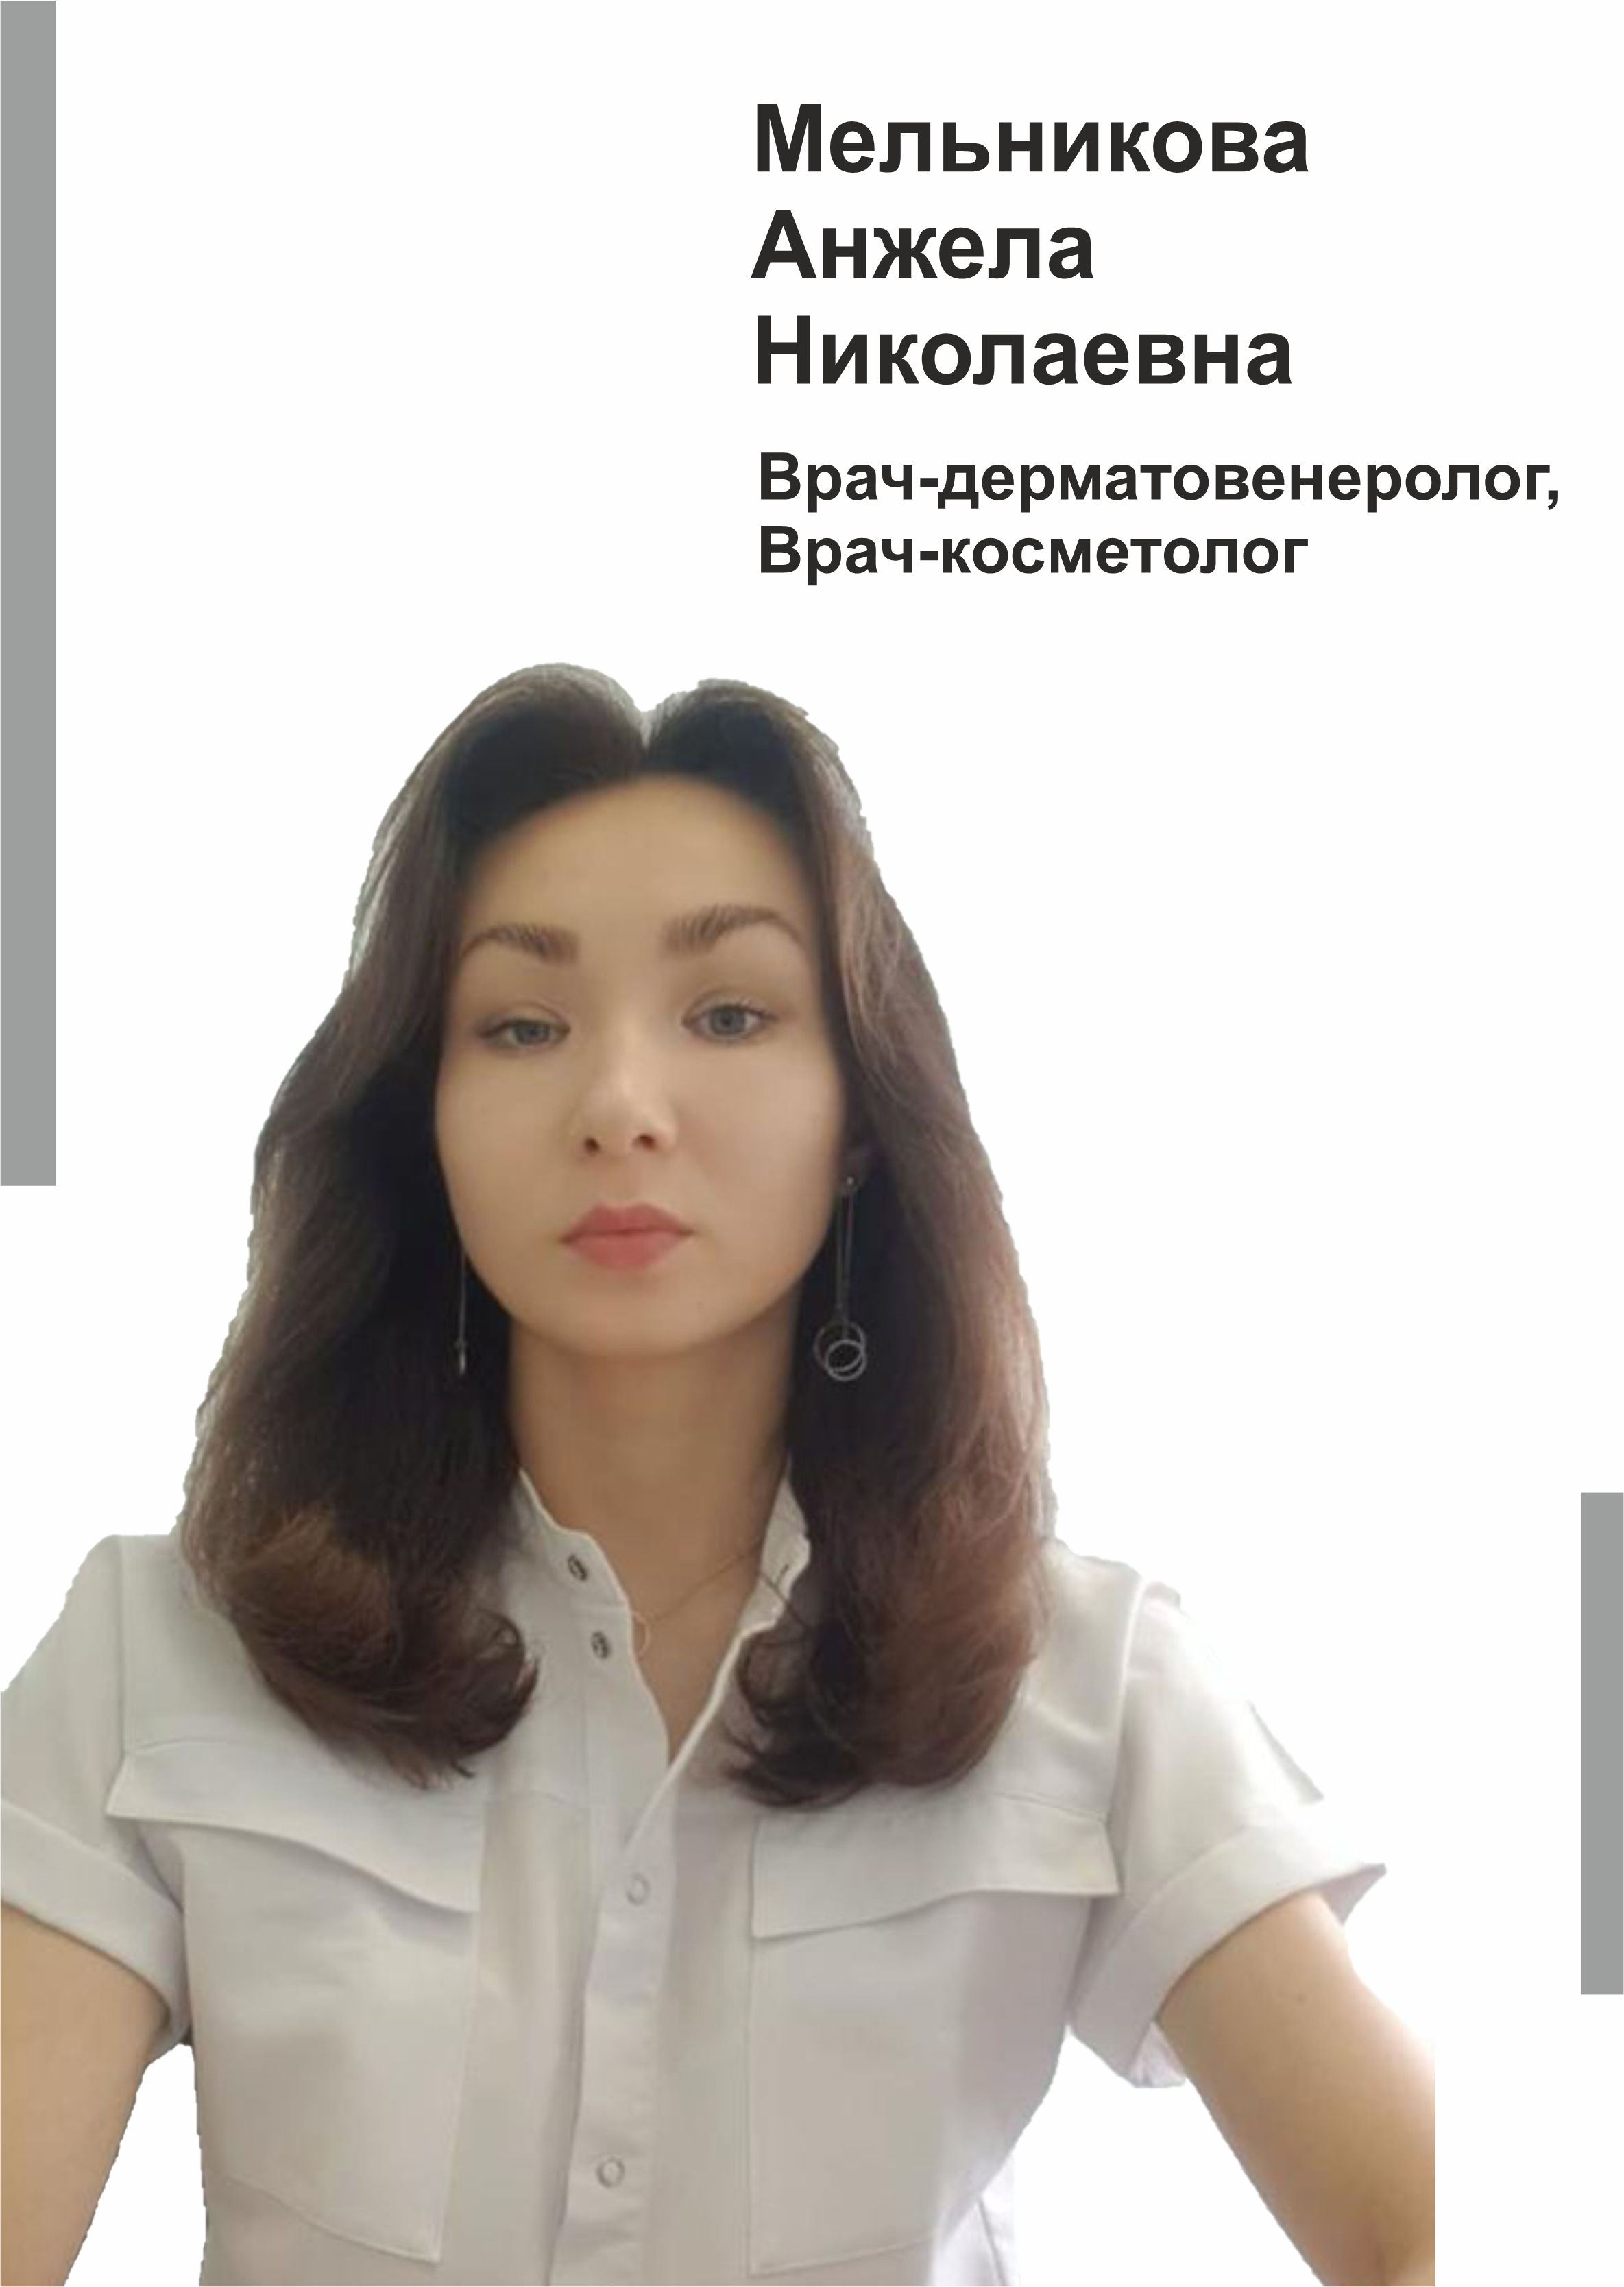 Мельникова Анжела Николаевна - врач-дерматовенеролог, врач-косметолог г. Югорск